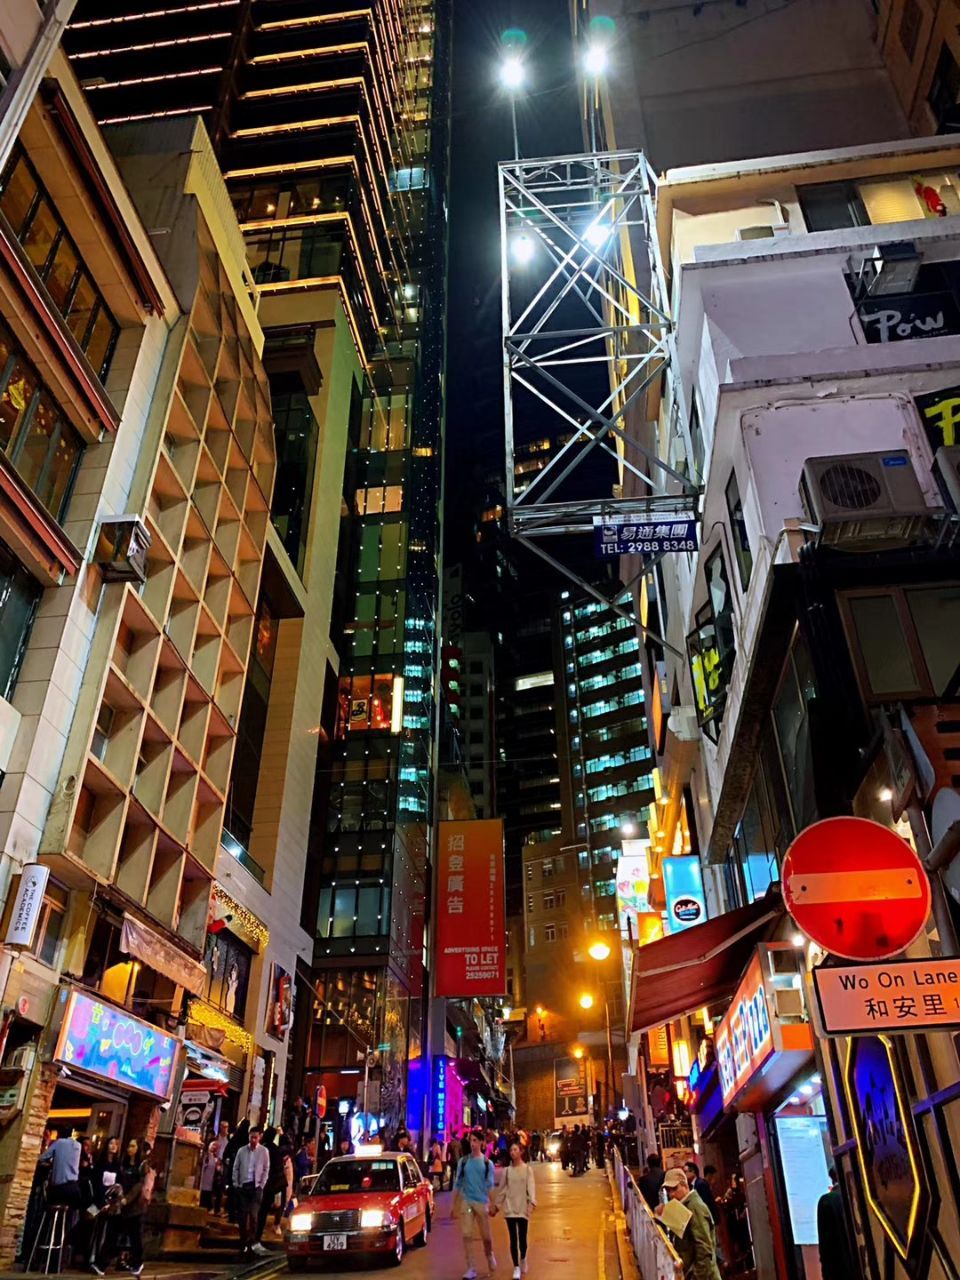 香港庙街 又名称为男人街购物攻略 庙街 又名称为男人街物中心 地址 电话 营业时间 携程攻略